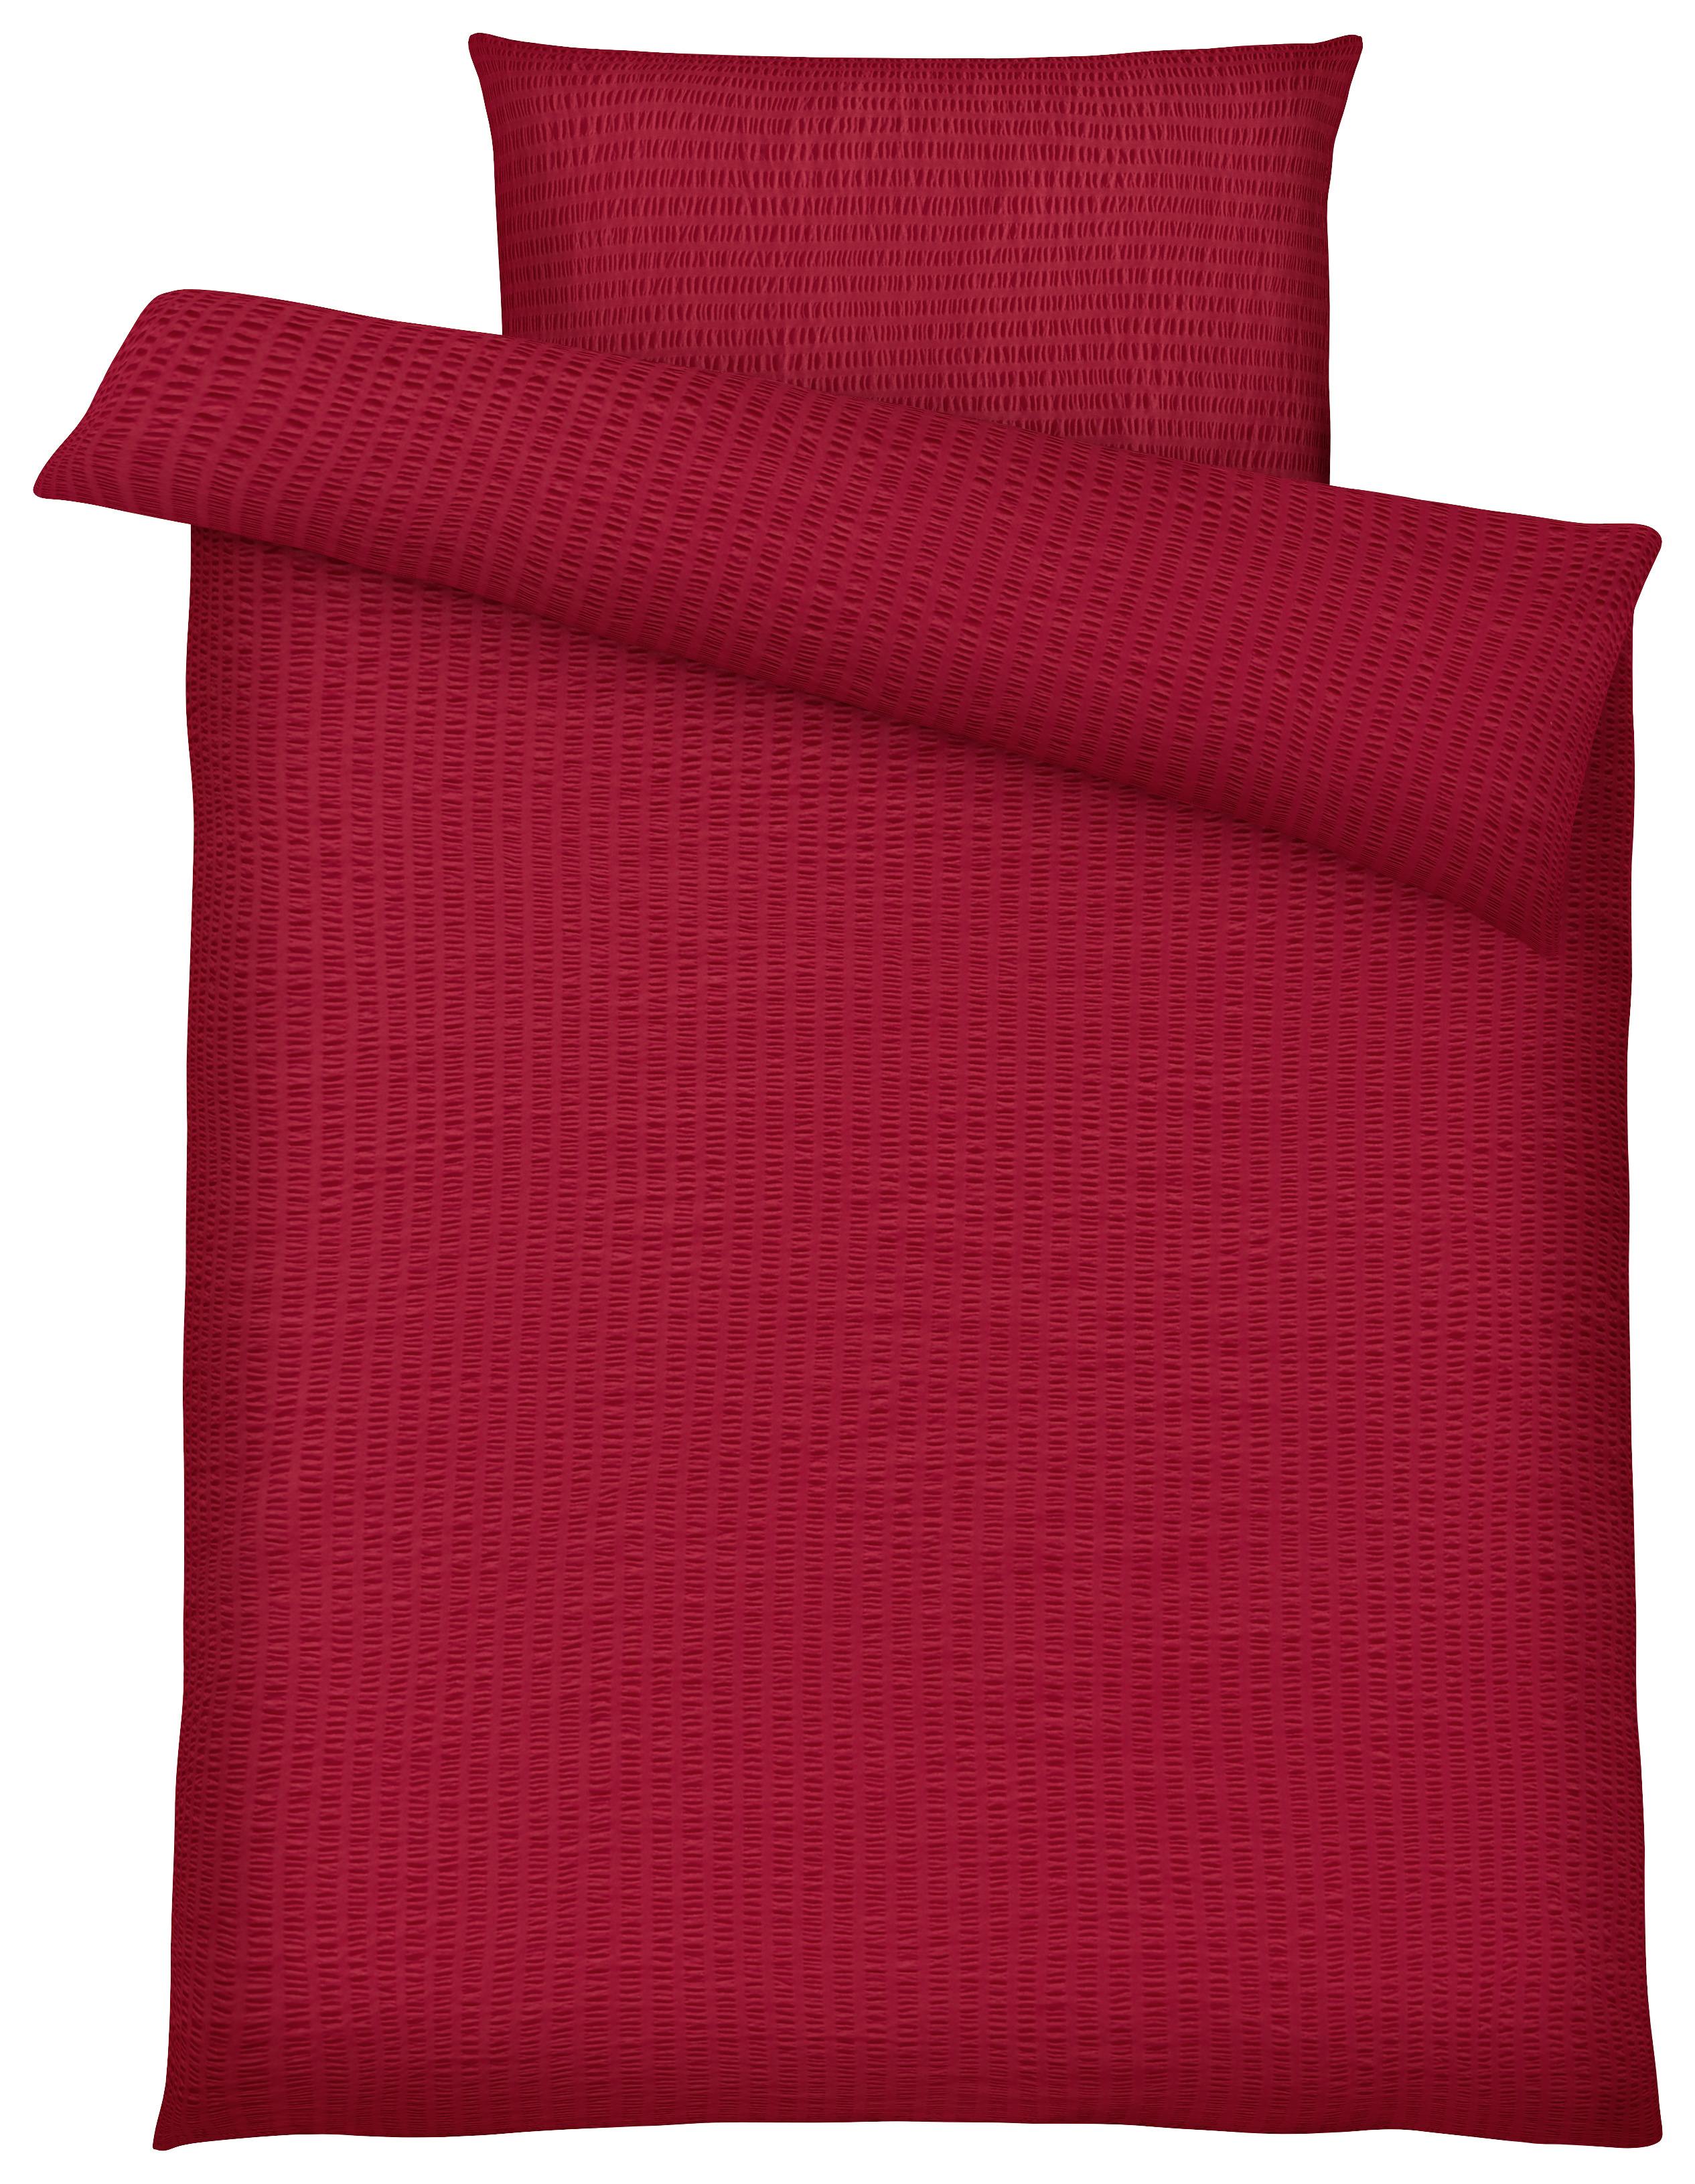 LENJERIE DE PAT BRIGITTE - roșu, Konventionell, textil (140/200cm) - Modern Living